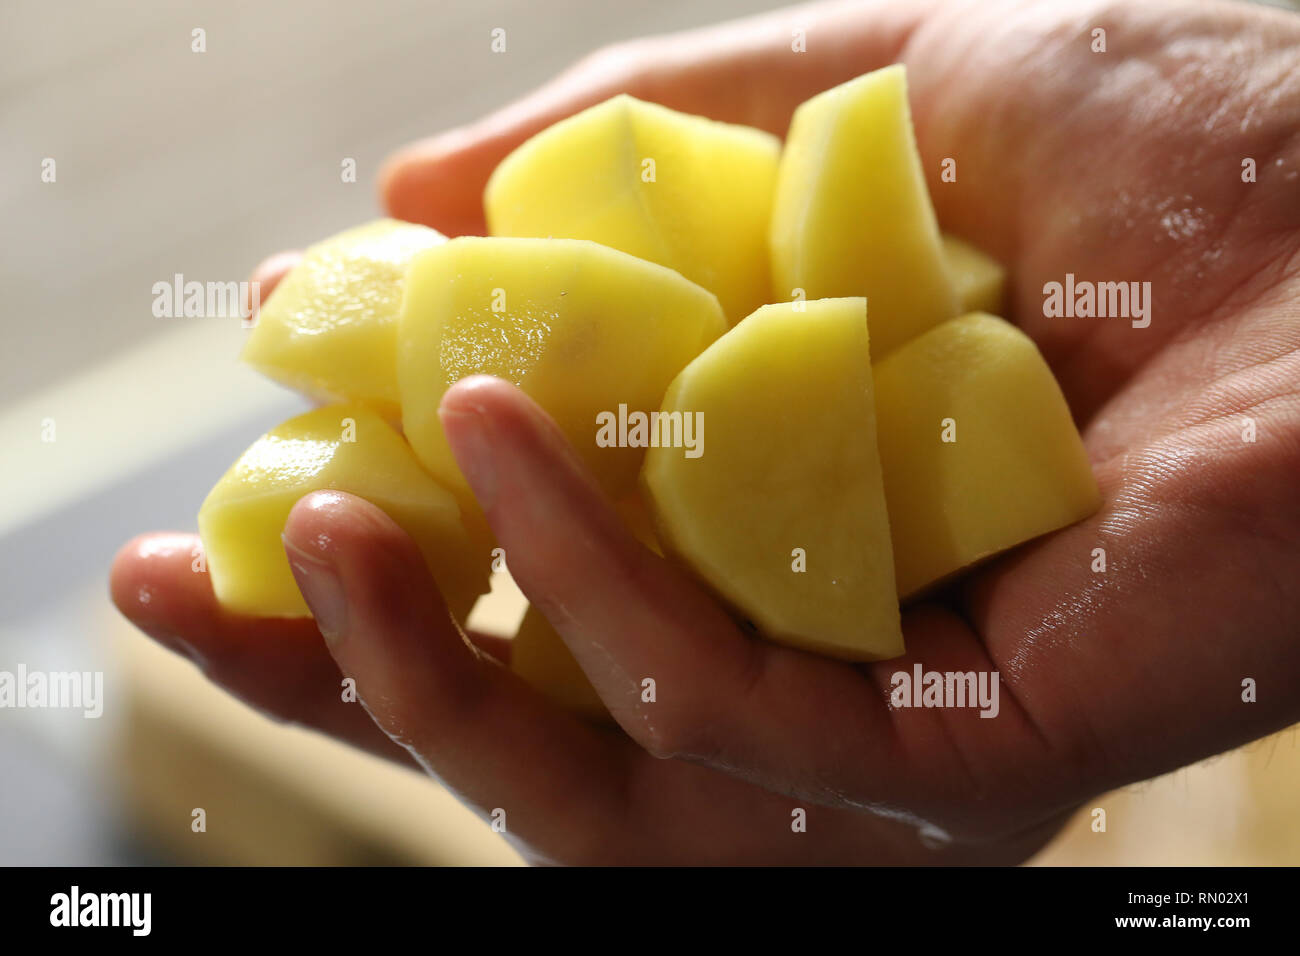 Un uomo è in possesso di sbucciate e tagliate a pezzi di patata in mano. Il processo di cottura del purè di patate. Immagine a colori presi con l'obiettivo macro. Foto Stock